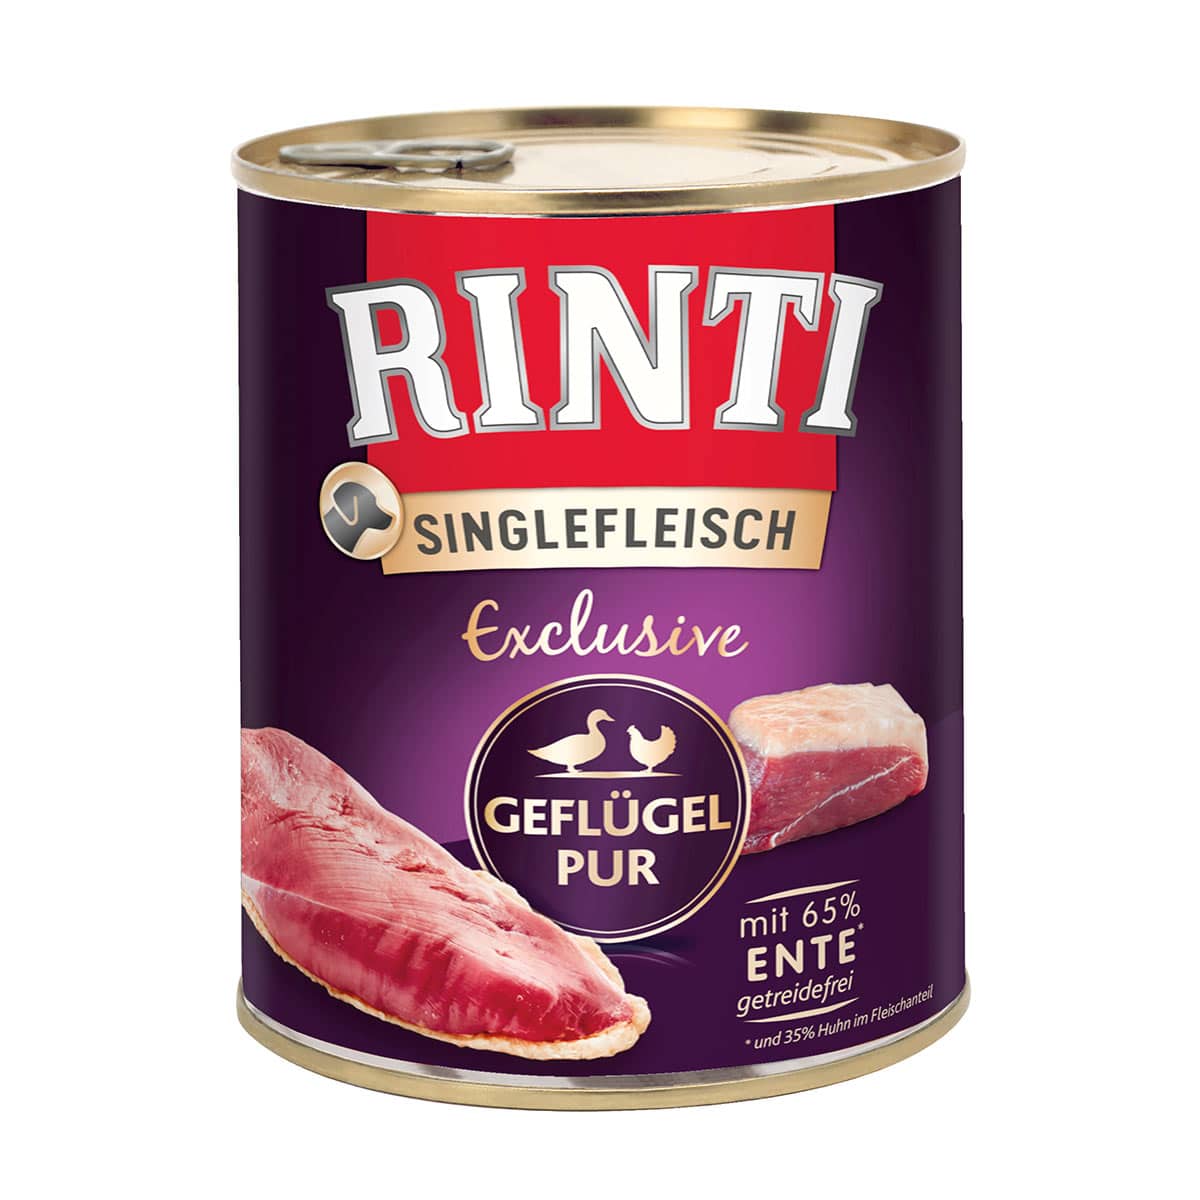 Rinti Singlefleisch Exclusive Geflügel pur 6x800g